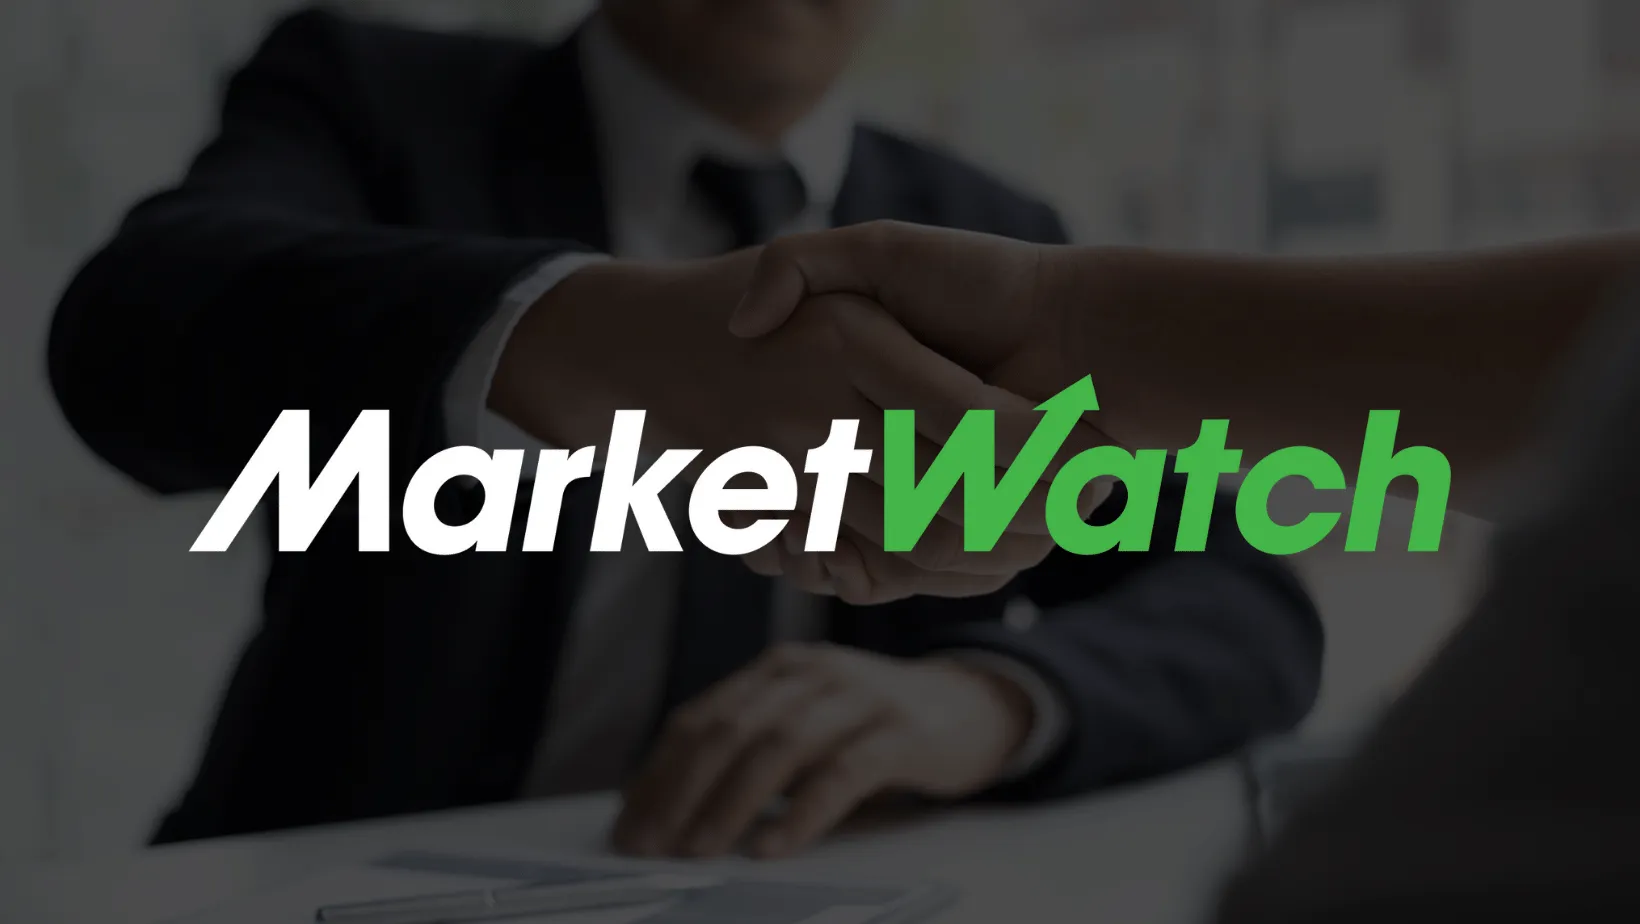 White MarketWatch logo over a dark background.